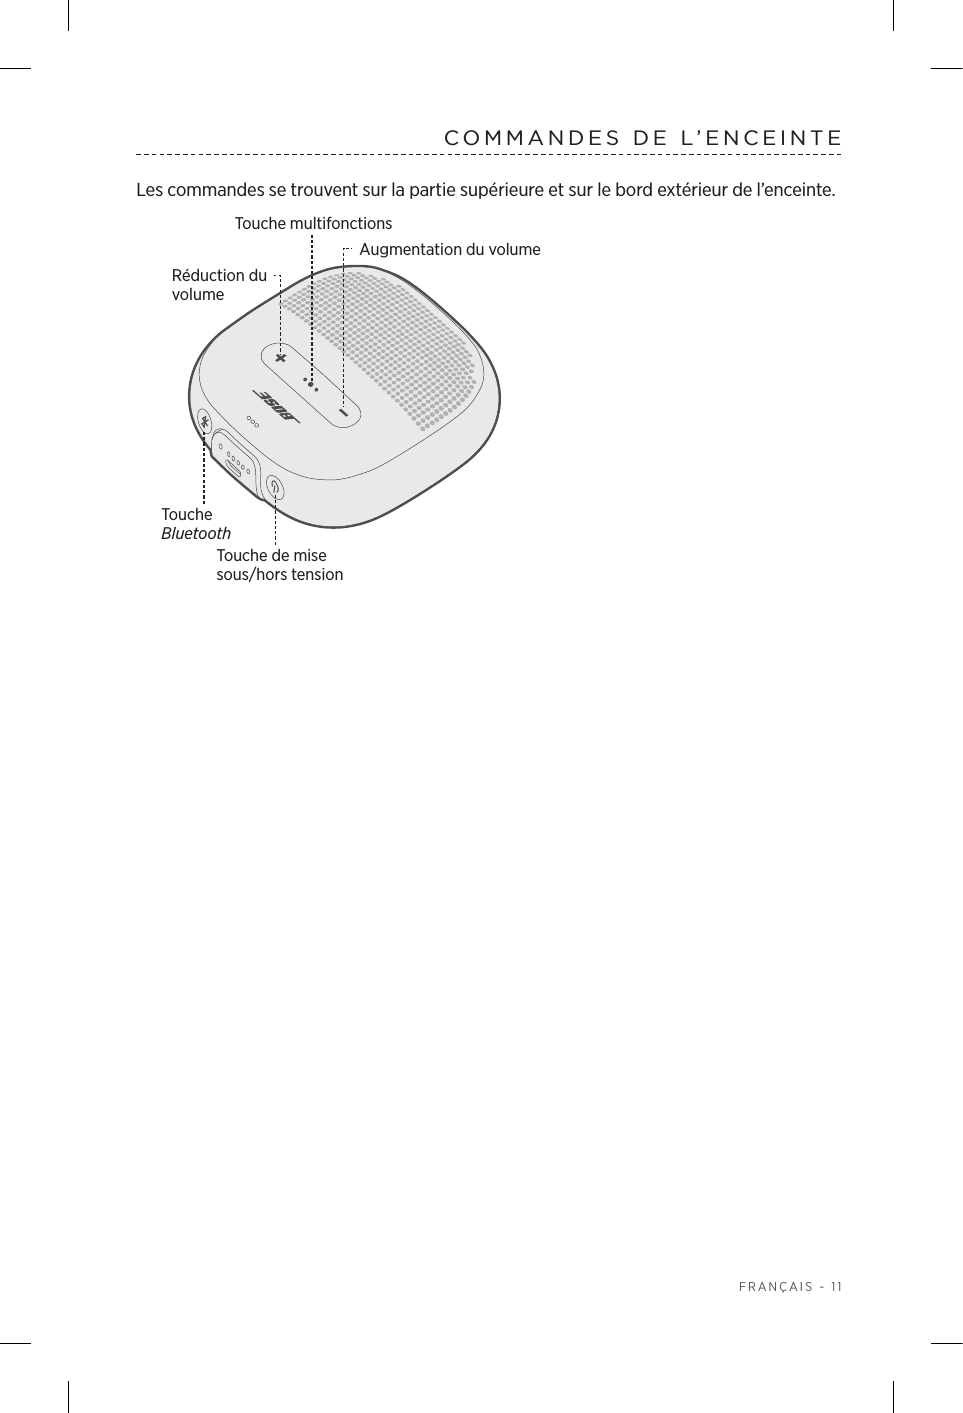  FRANÇAIS - 11COMMANDES DE L’ENCEINTELes commandes se trouvent sur la partie supérieure et sur le bord extérieur de l’enceinte.Touche BluetoothTouche de mise sous/hors tensionAugmentation du volumeRéduction du  volumeTouche multifonctions